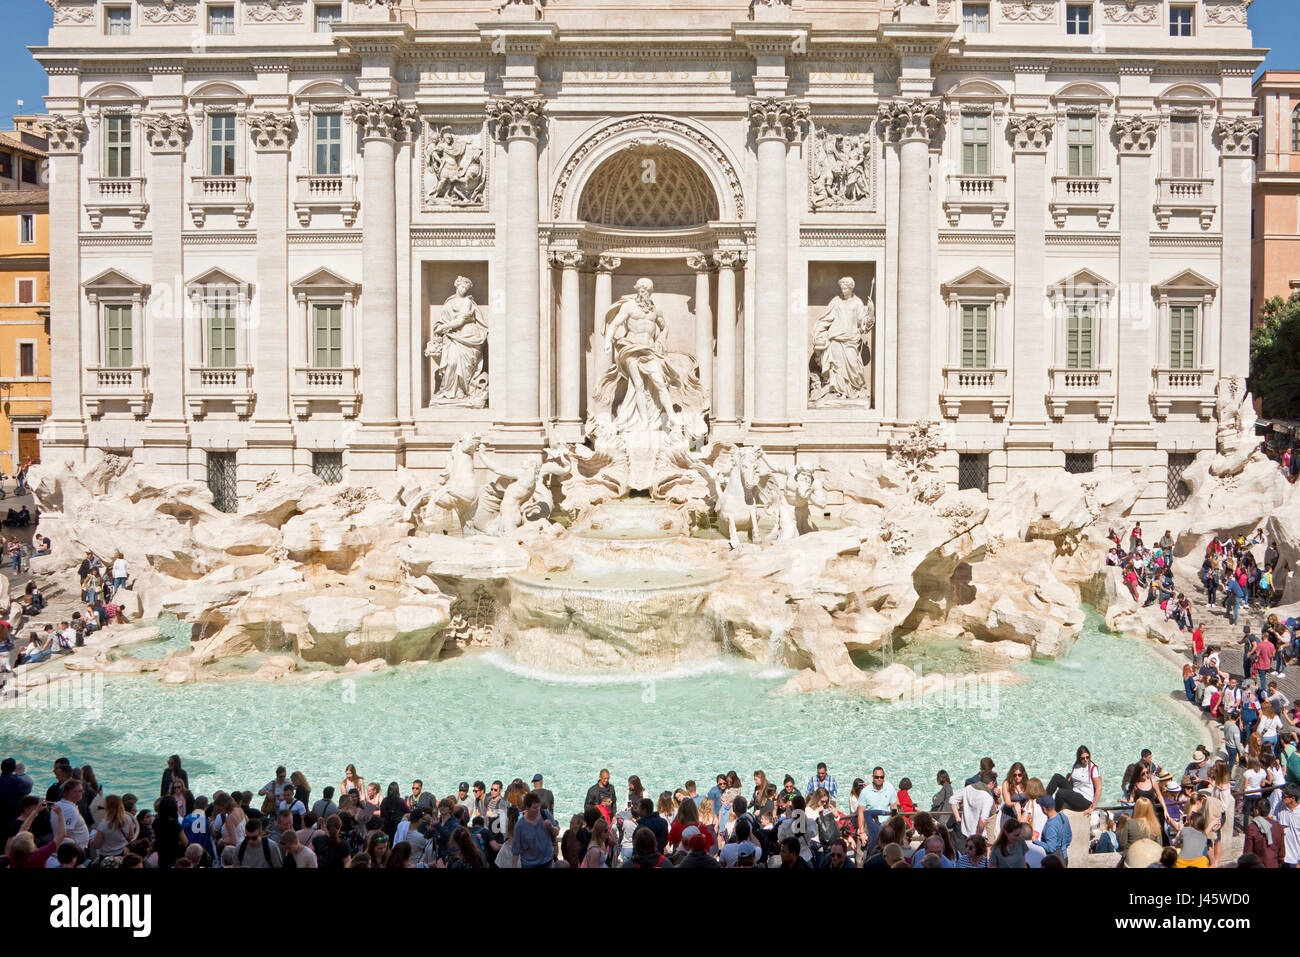 Una veduta aerea della Fontana di Trevi Fontana di Trevi' a Roma con la folla di turisti e visitatori in una giornata di sole con cielo blu. Foto Stock